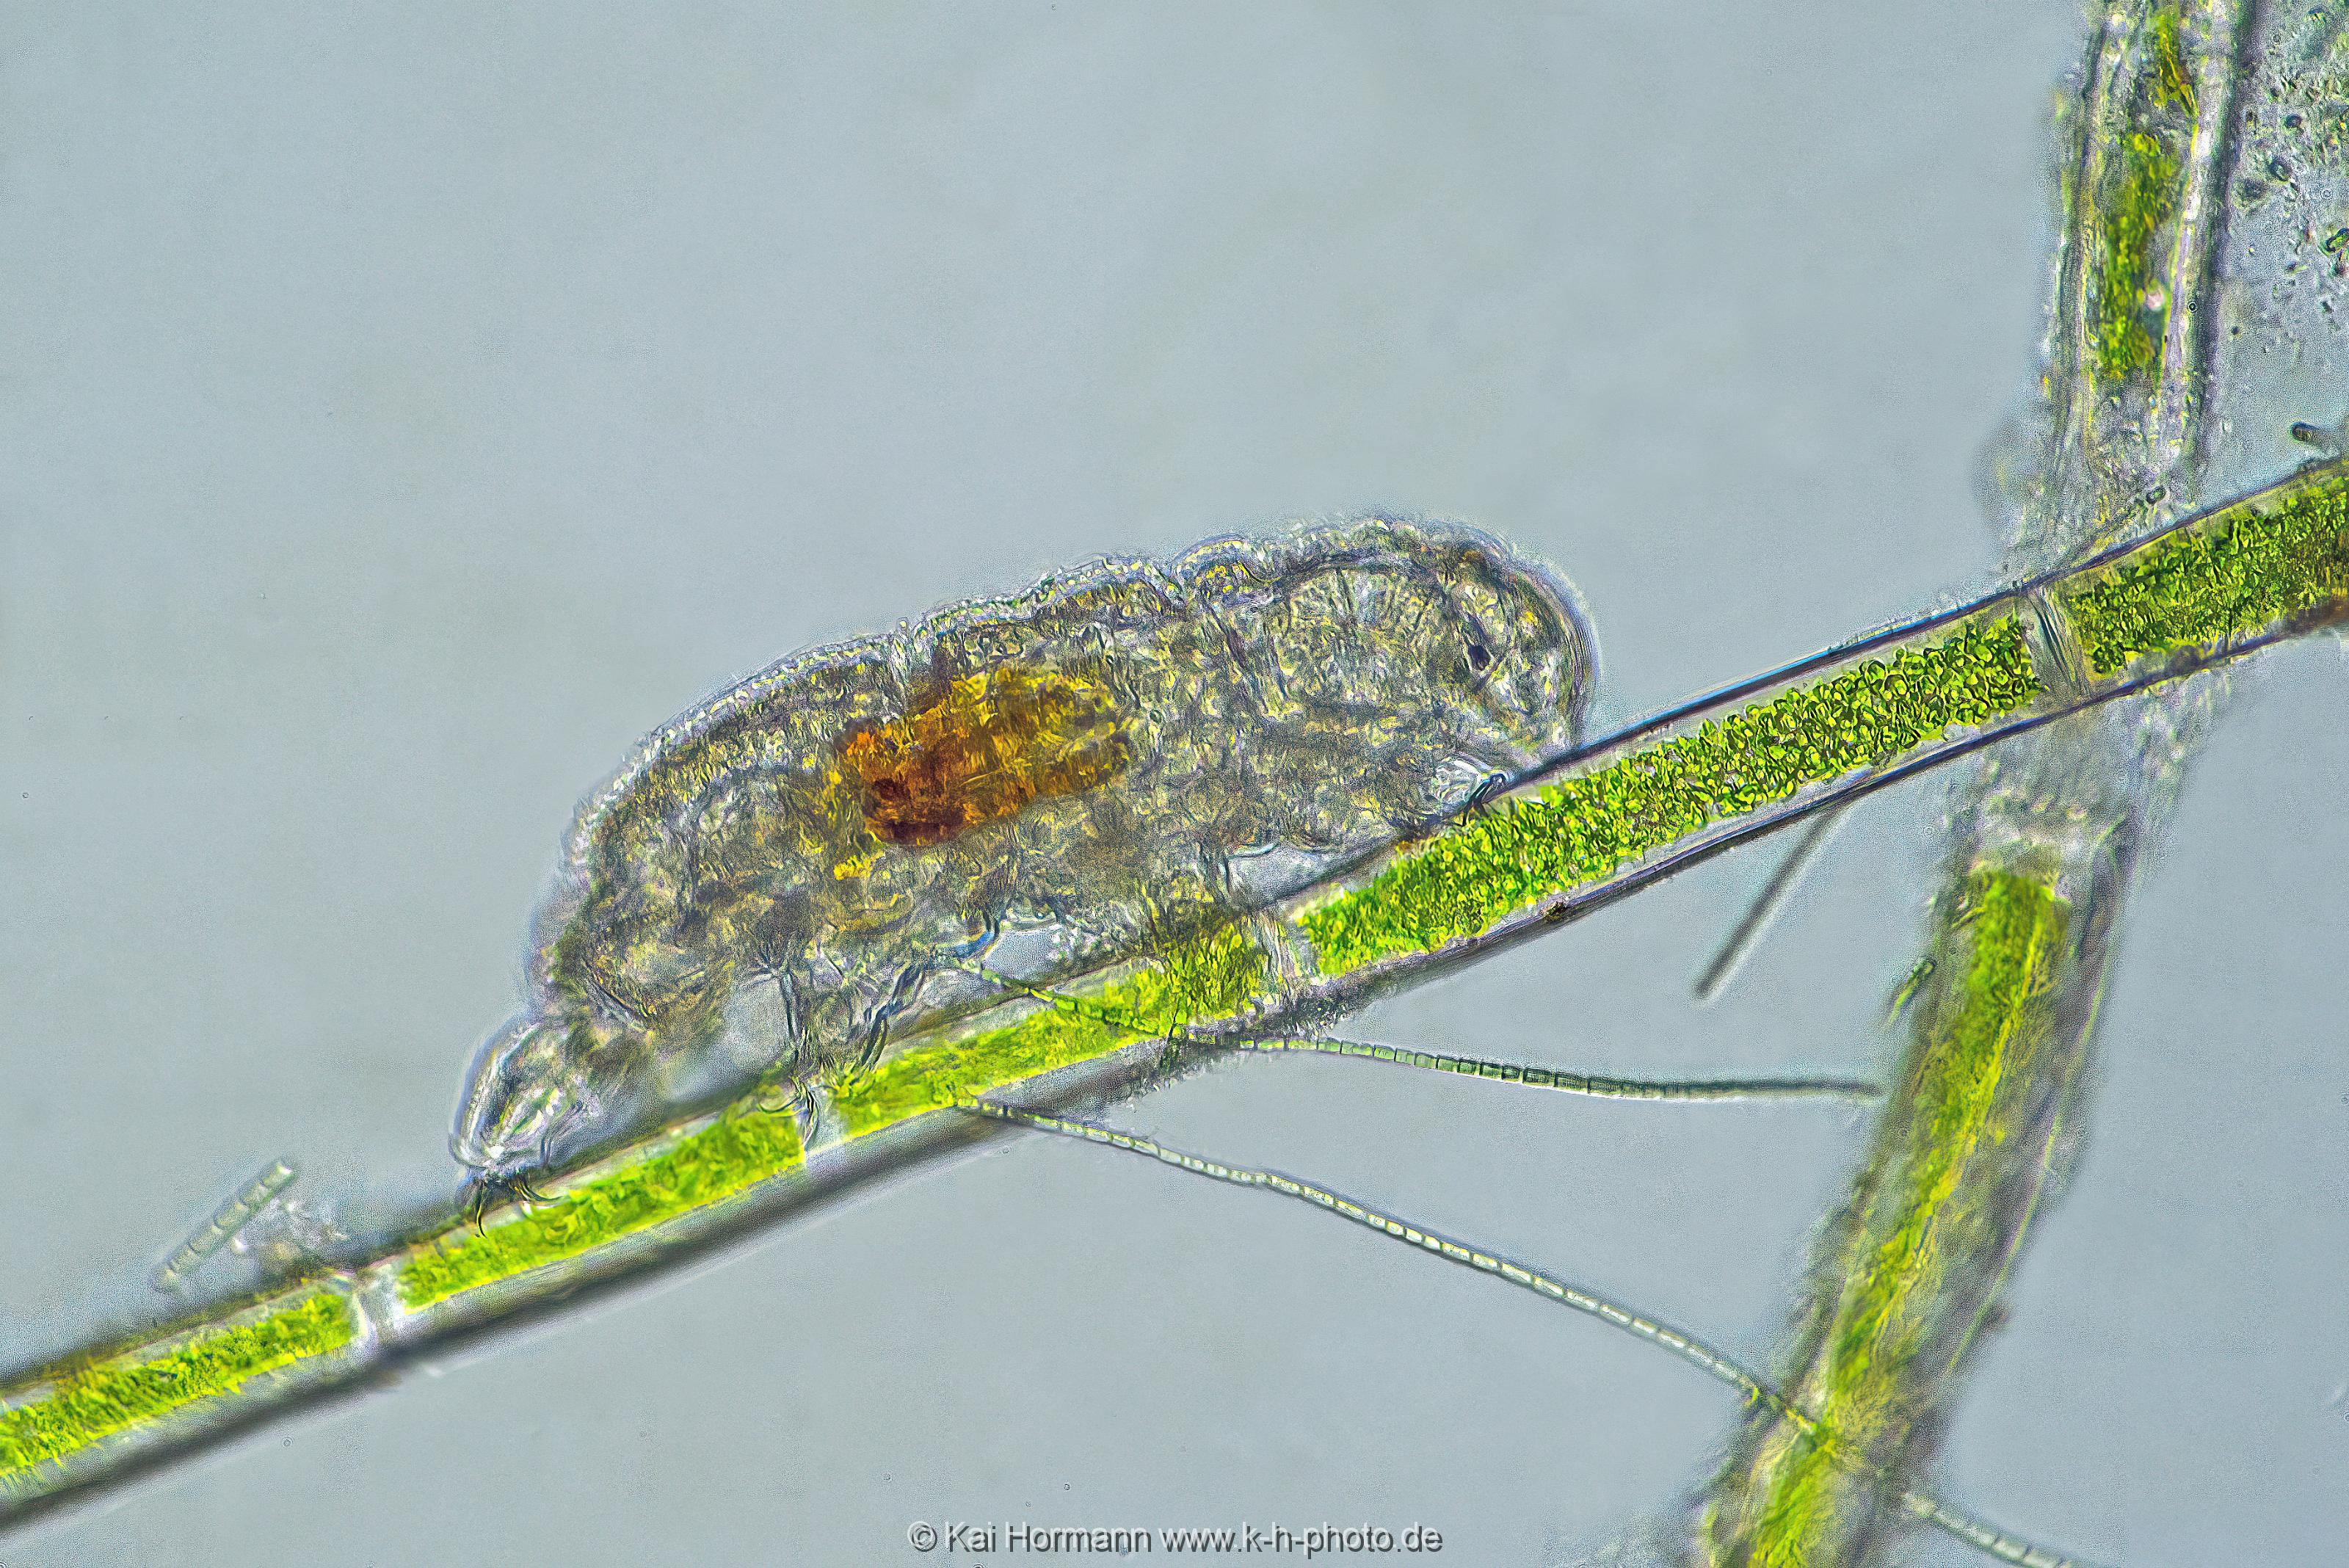 Bärtierchen Tardigrada. Mikrofotografie: Mikroskopische Aufnahmen von Einzellern, Algen und Kleinstlebewesen.